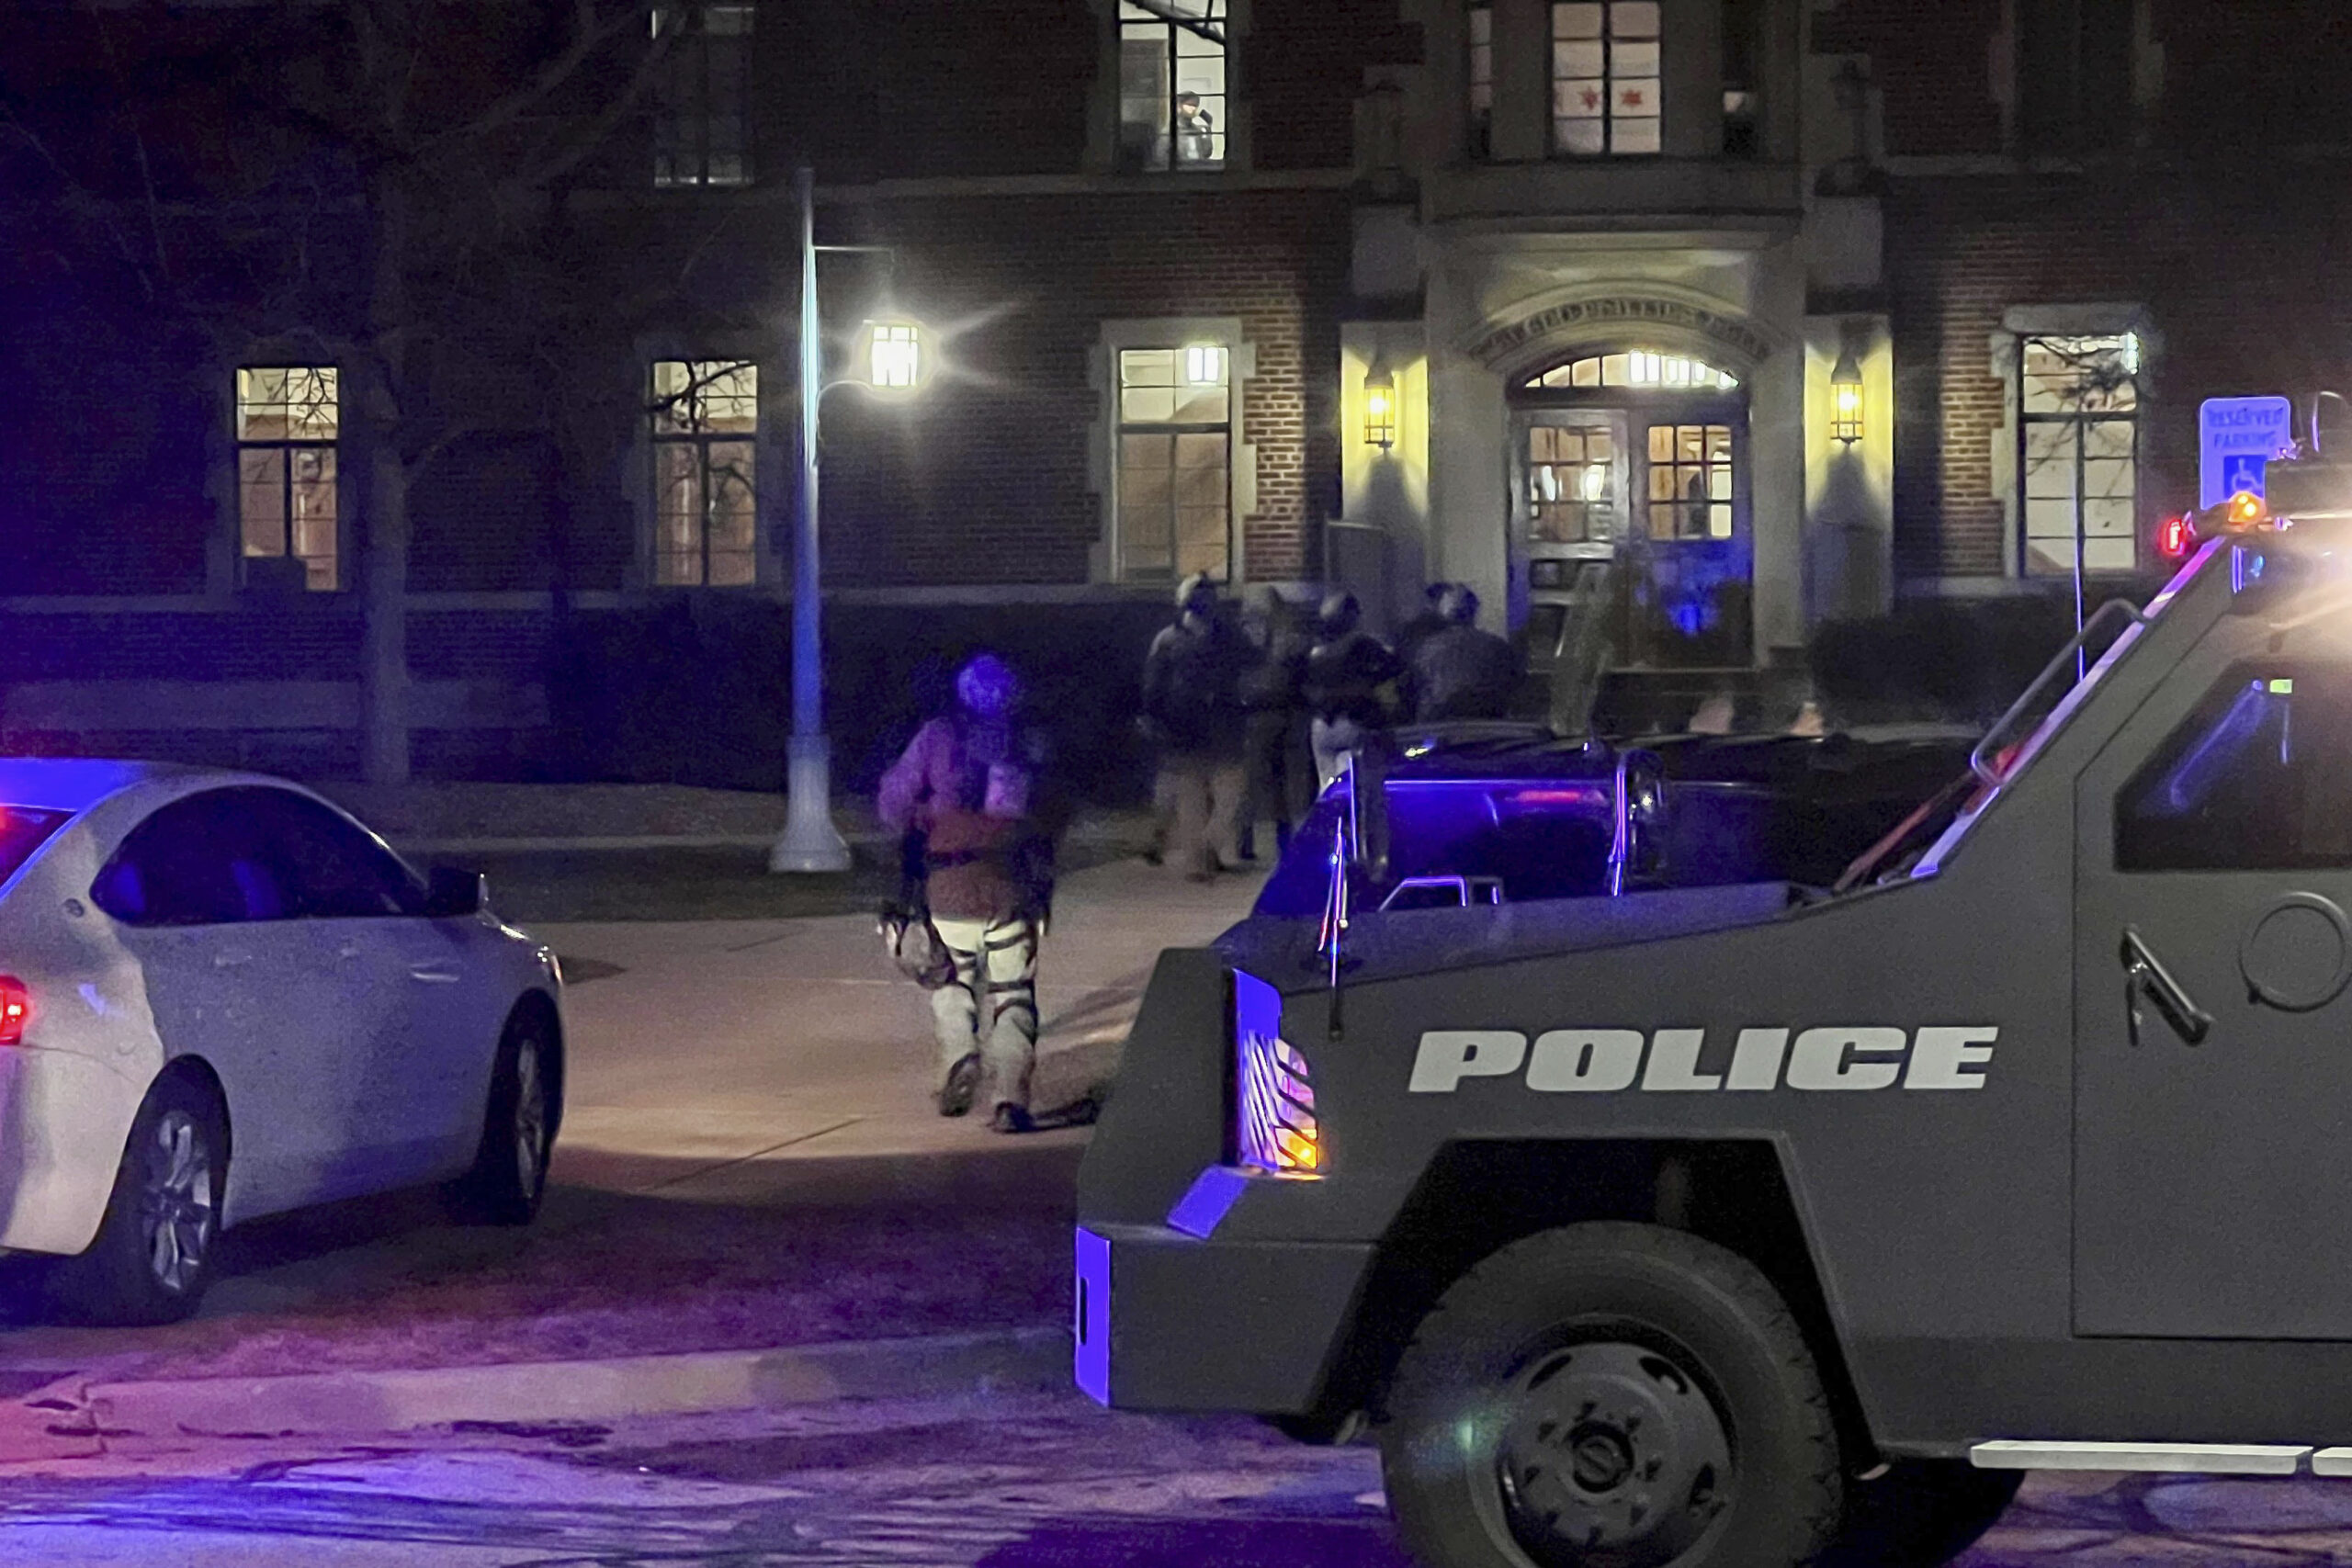 Agentes de la policía llegan al campus de la Universidad Estatal de Michigan, en East Lansing, Michigan, el lunes 13 de febrero de 2023, luego de reportes de disparos. (Jakkar Aimery/Detroit News via AP)